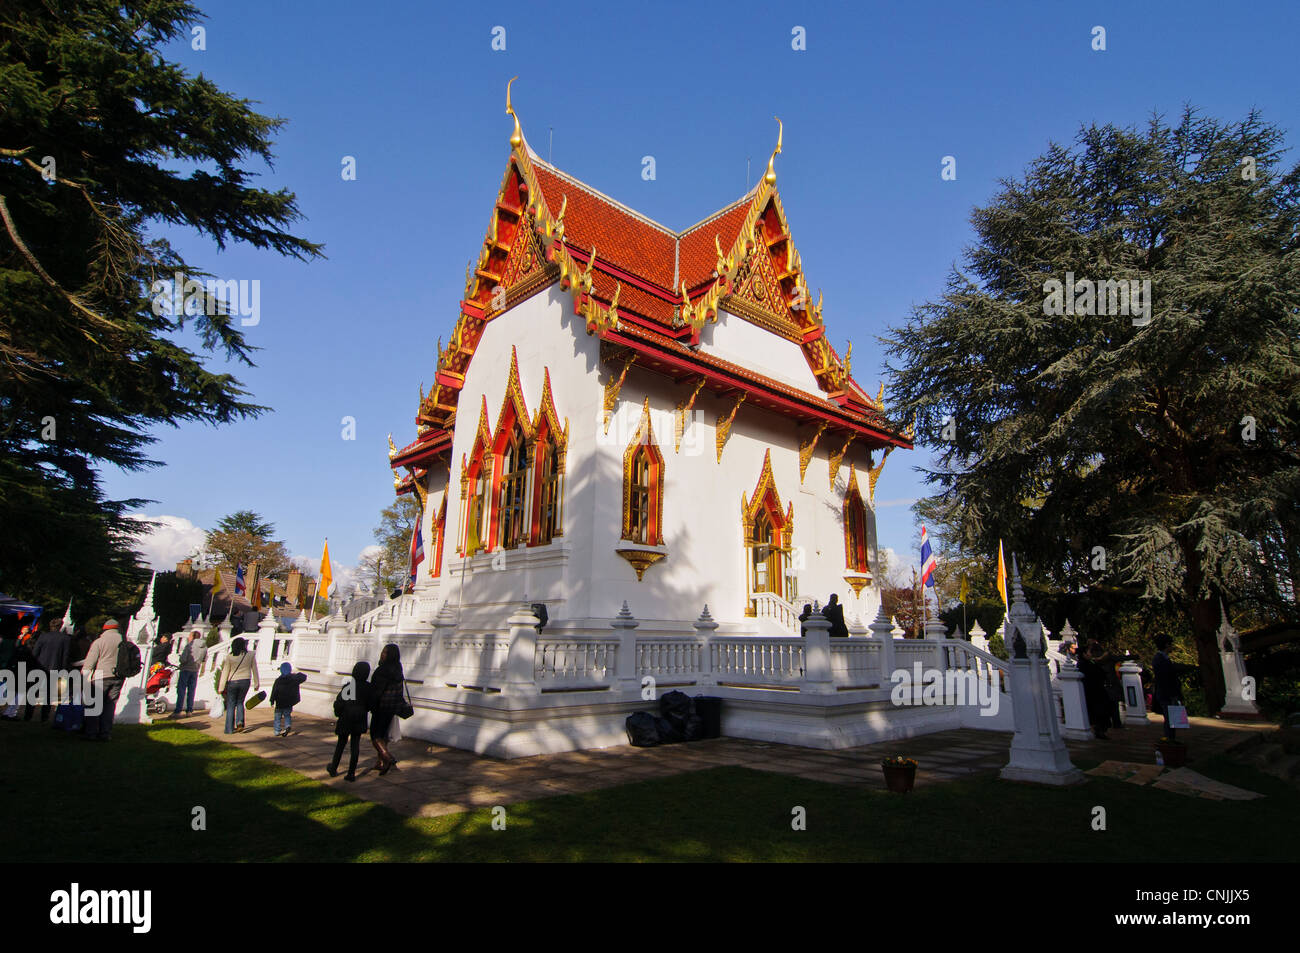 Wimbledon, Londres, Royaume-Uni, 15 avril 2012. À la Thai temple de Wat Buddhapadipa pour célébrer Songkran, Nouvel An thaï. Banque D'Images